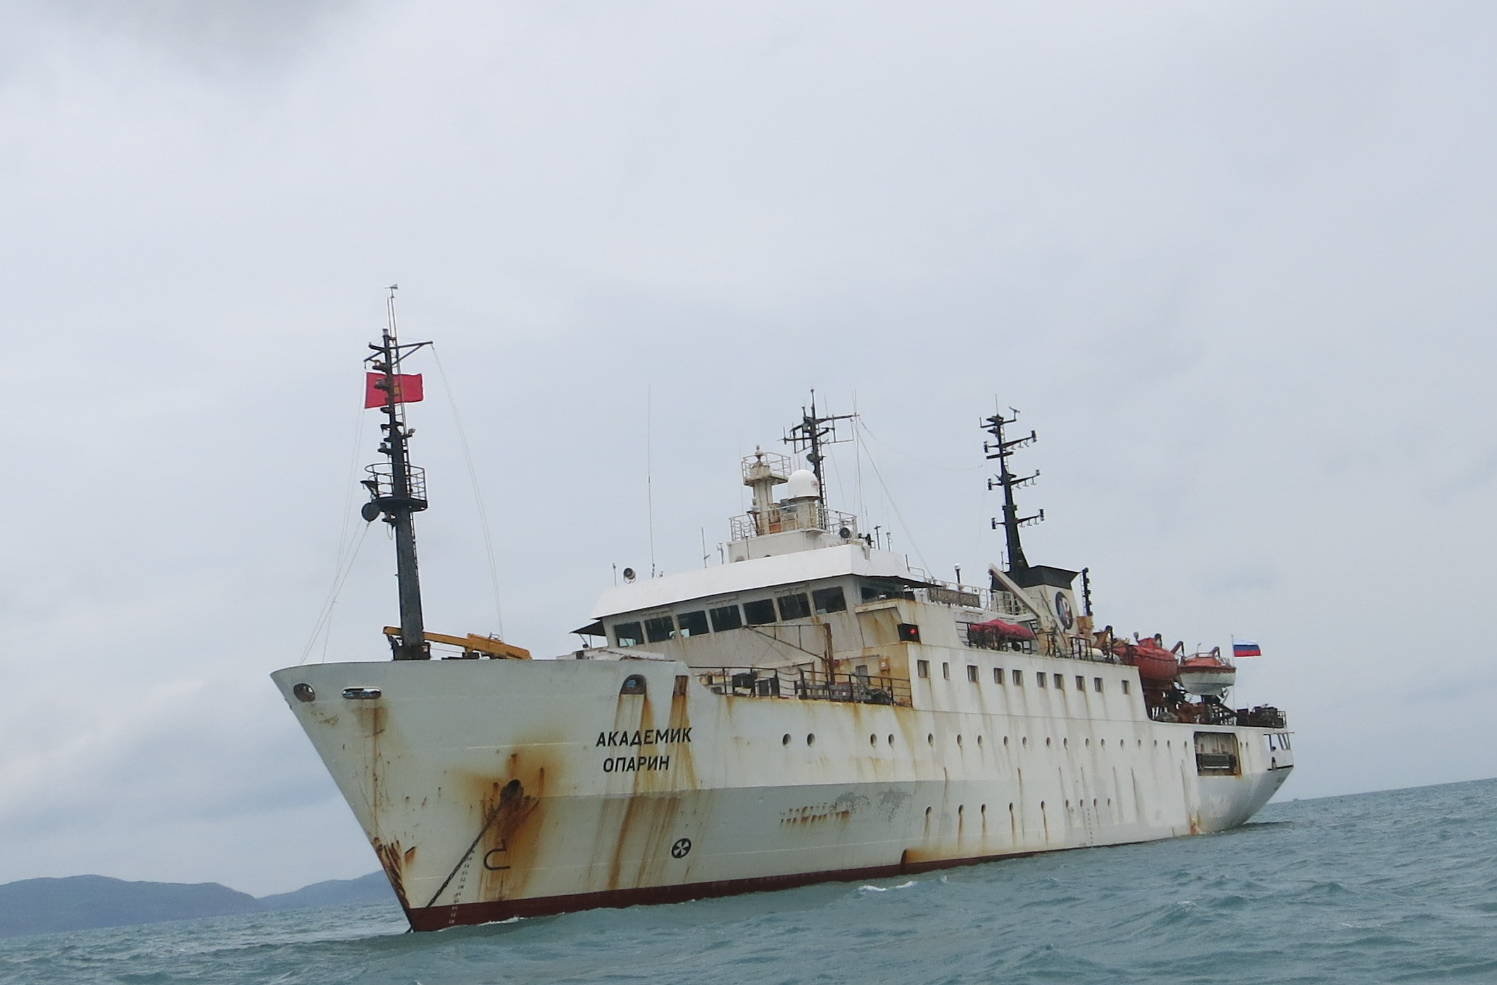 Tham gia nghiên cứu khoa học trên tàu nghiên cứu biển Viện sĩ Oparin trong vùng biển Việt Nam